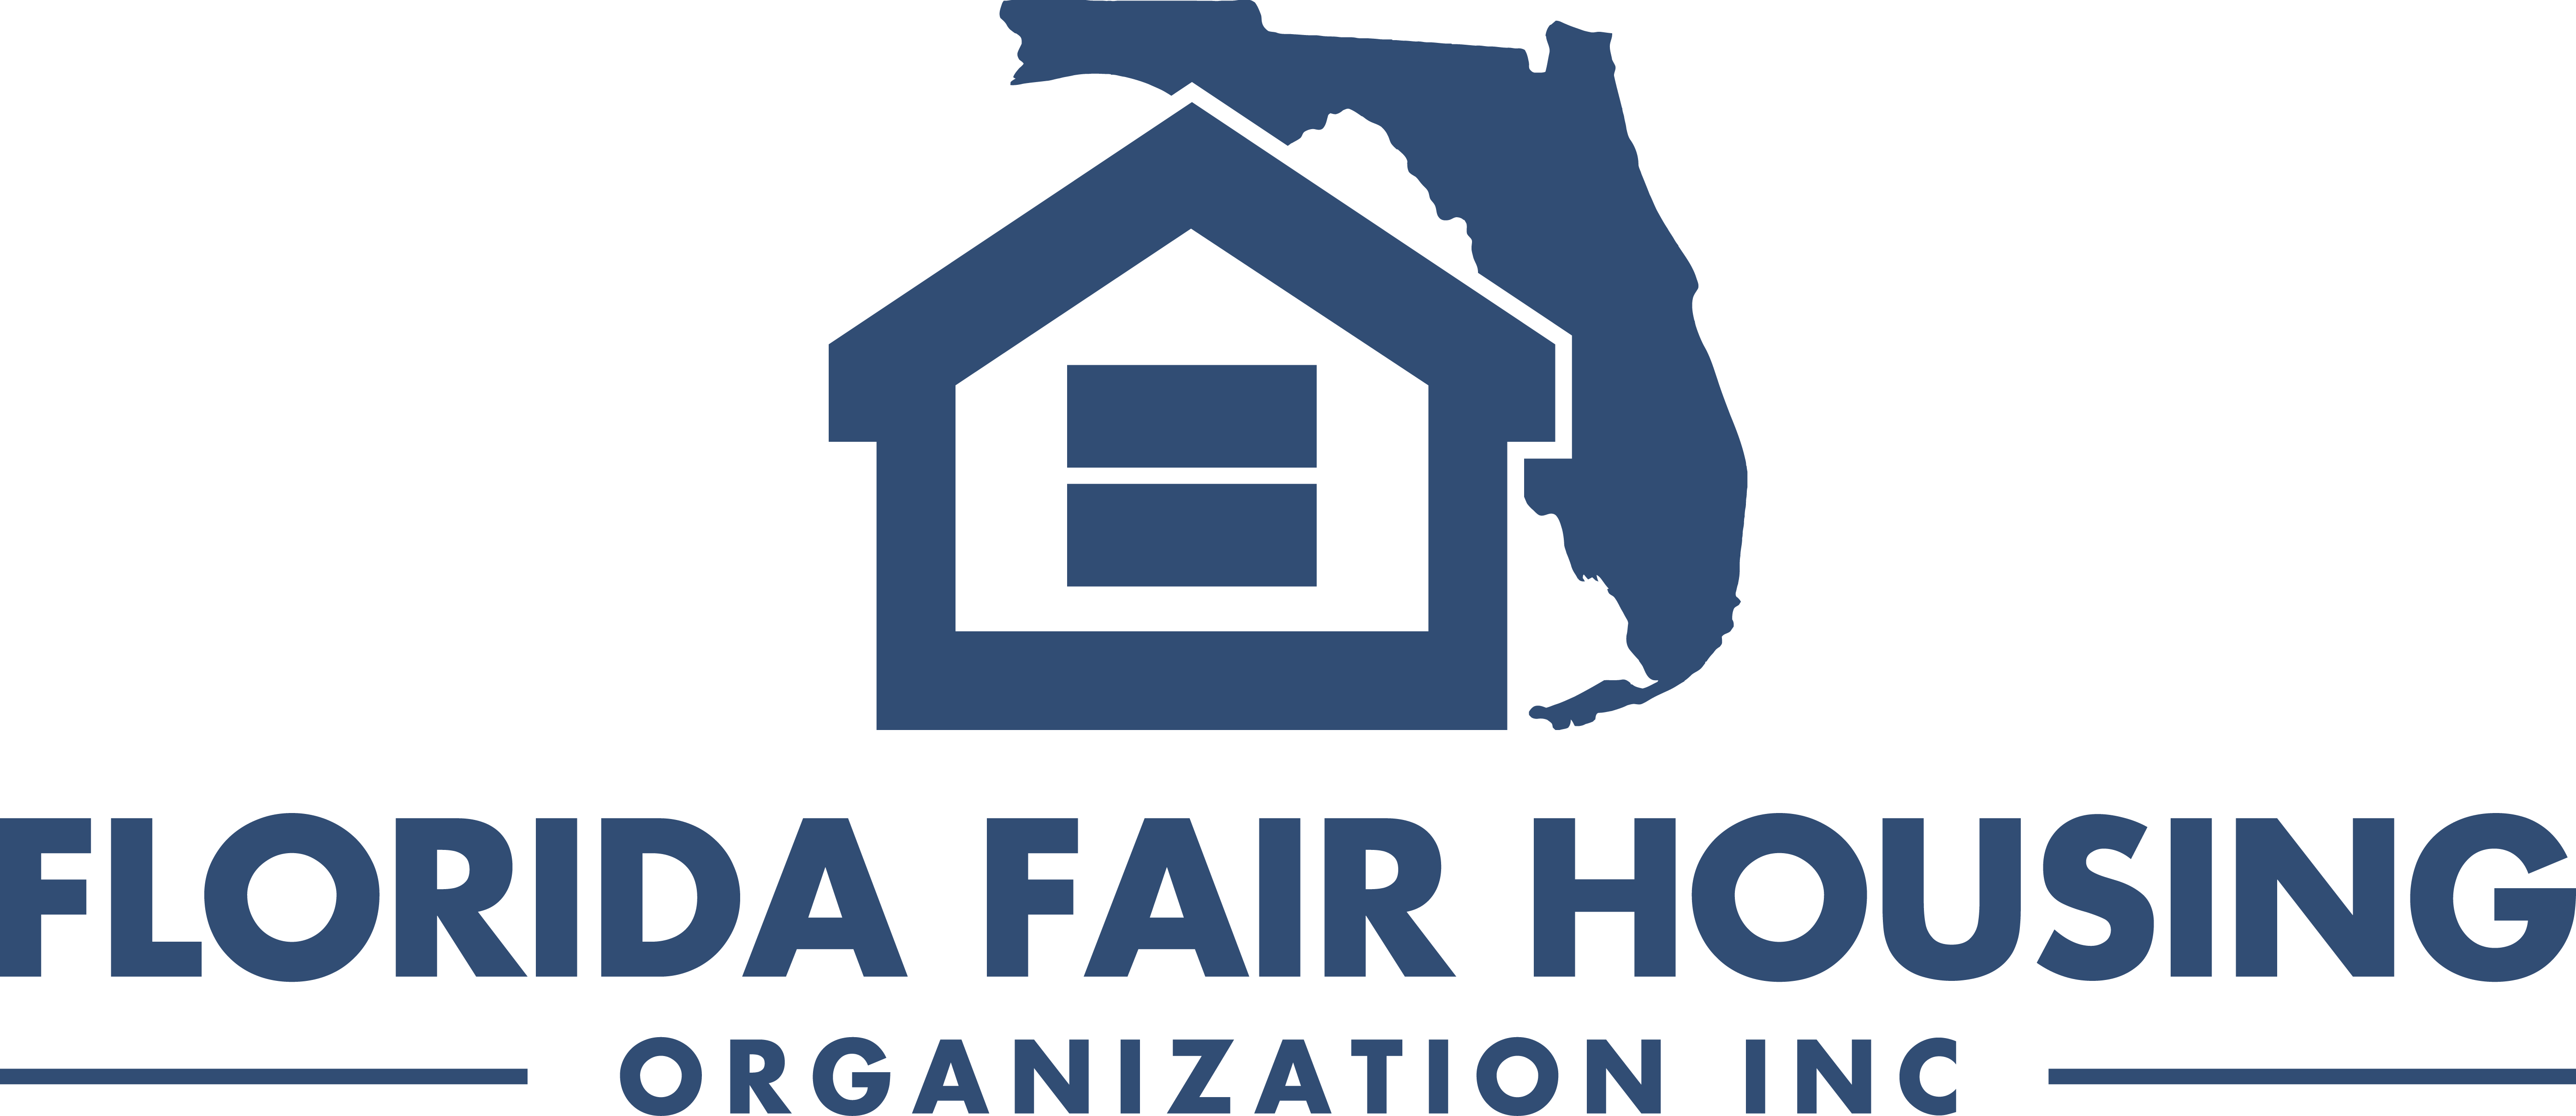 Florida Fair Housing Organization, Inc.